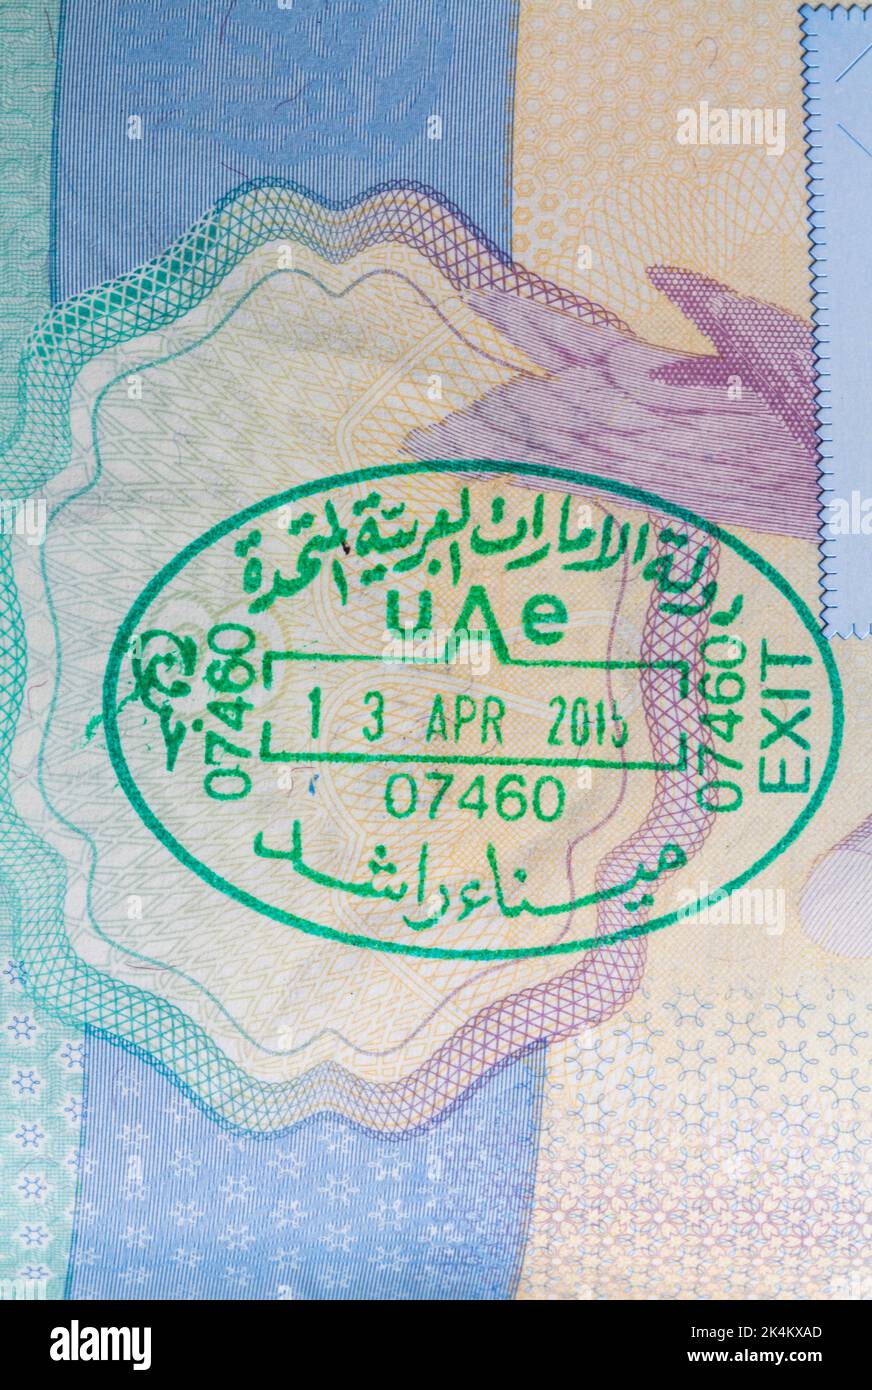 UAE stamp in British passport  - United Arab Emirates 13 Apr 2015 exit Stock Photo